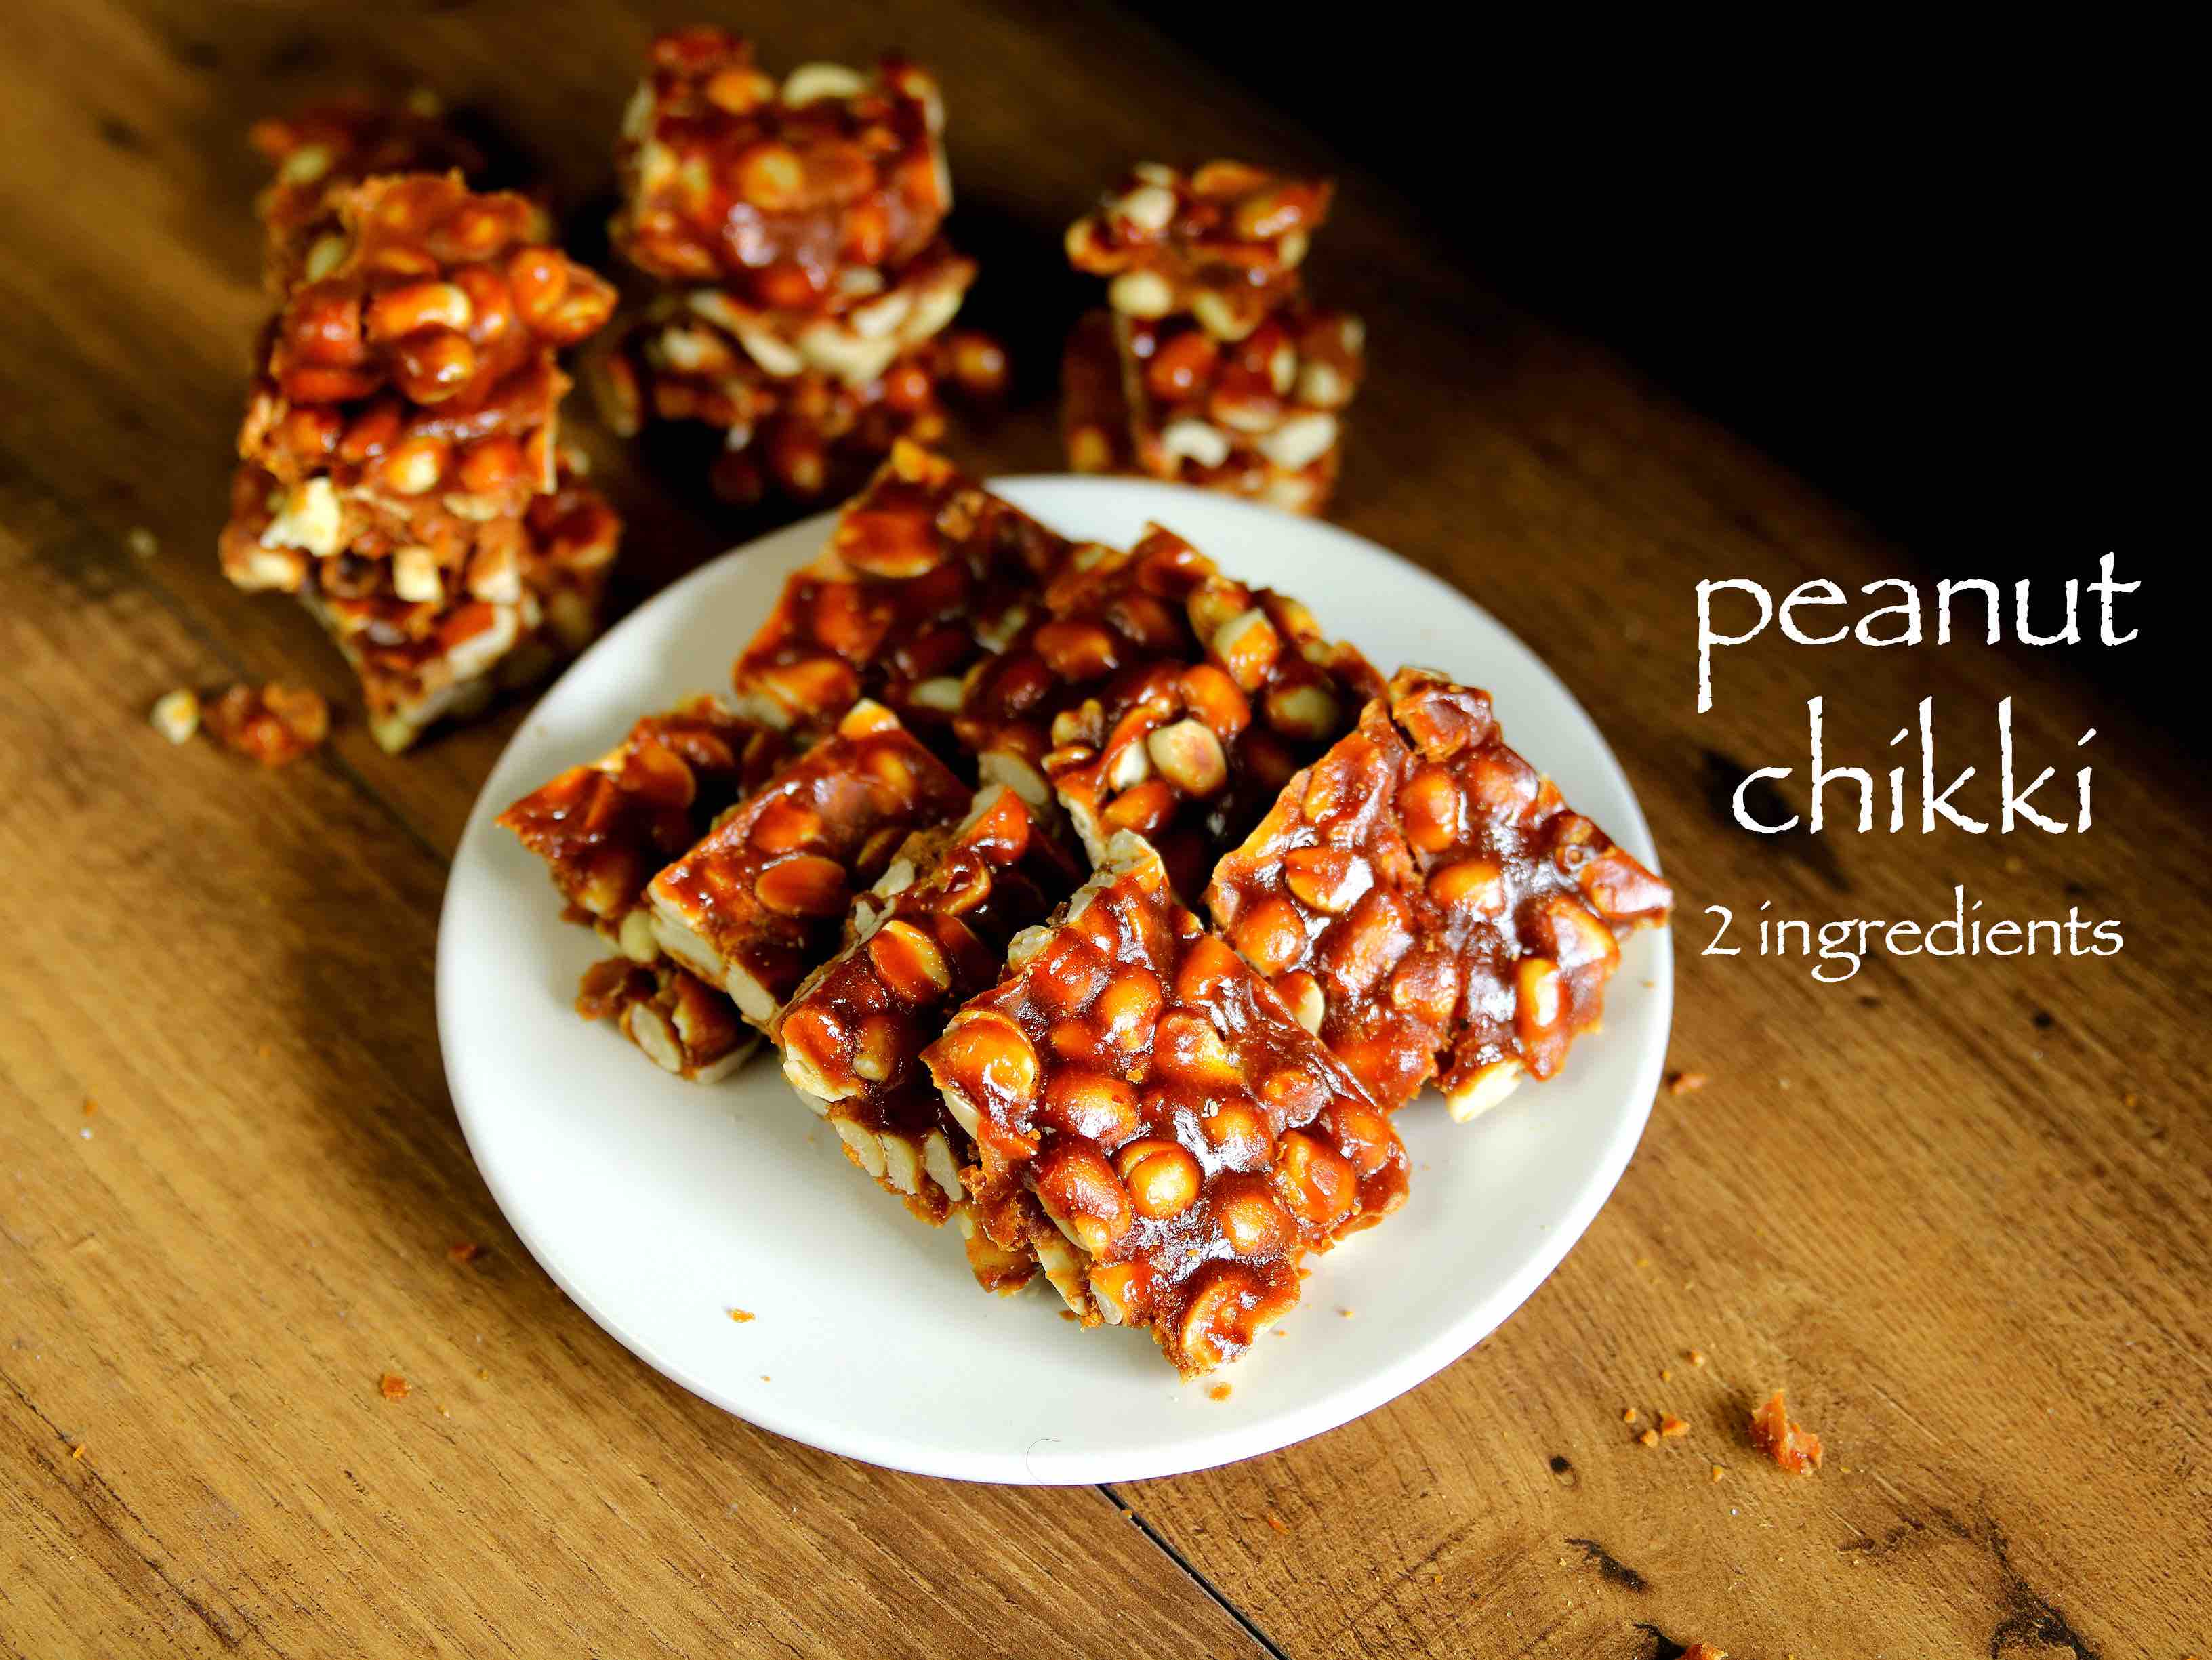 chikki recipe | peanut chikki recipe | groundnut chikki or shengdana chikki